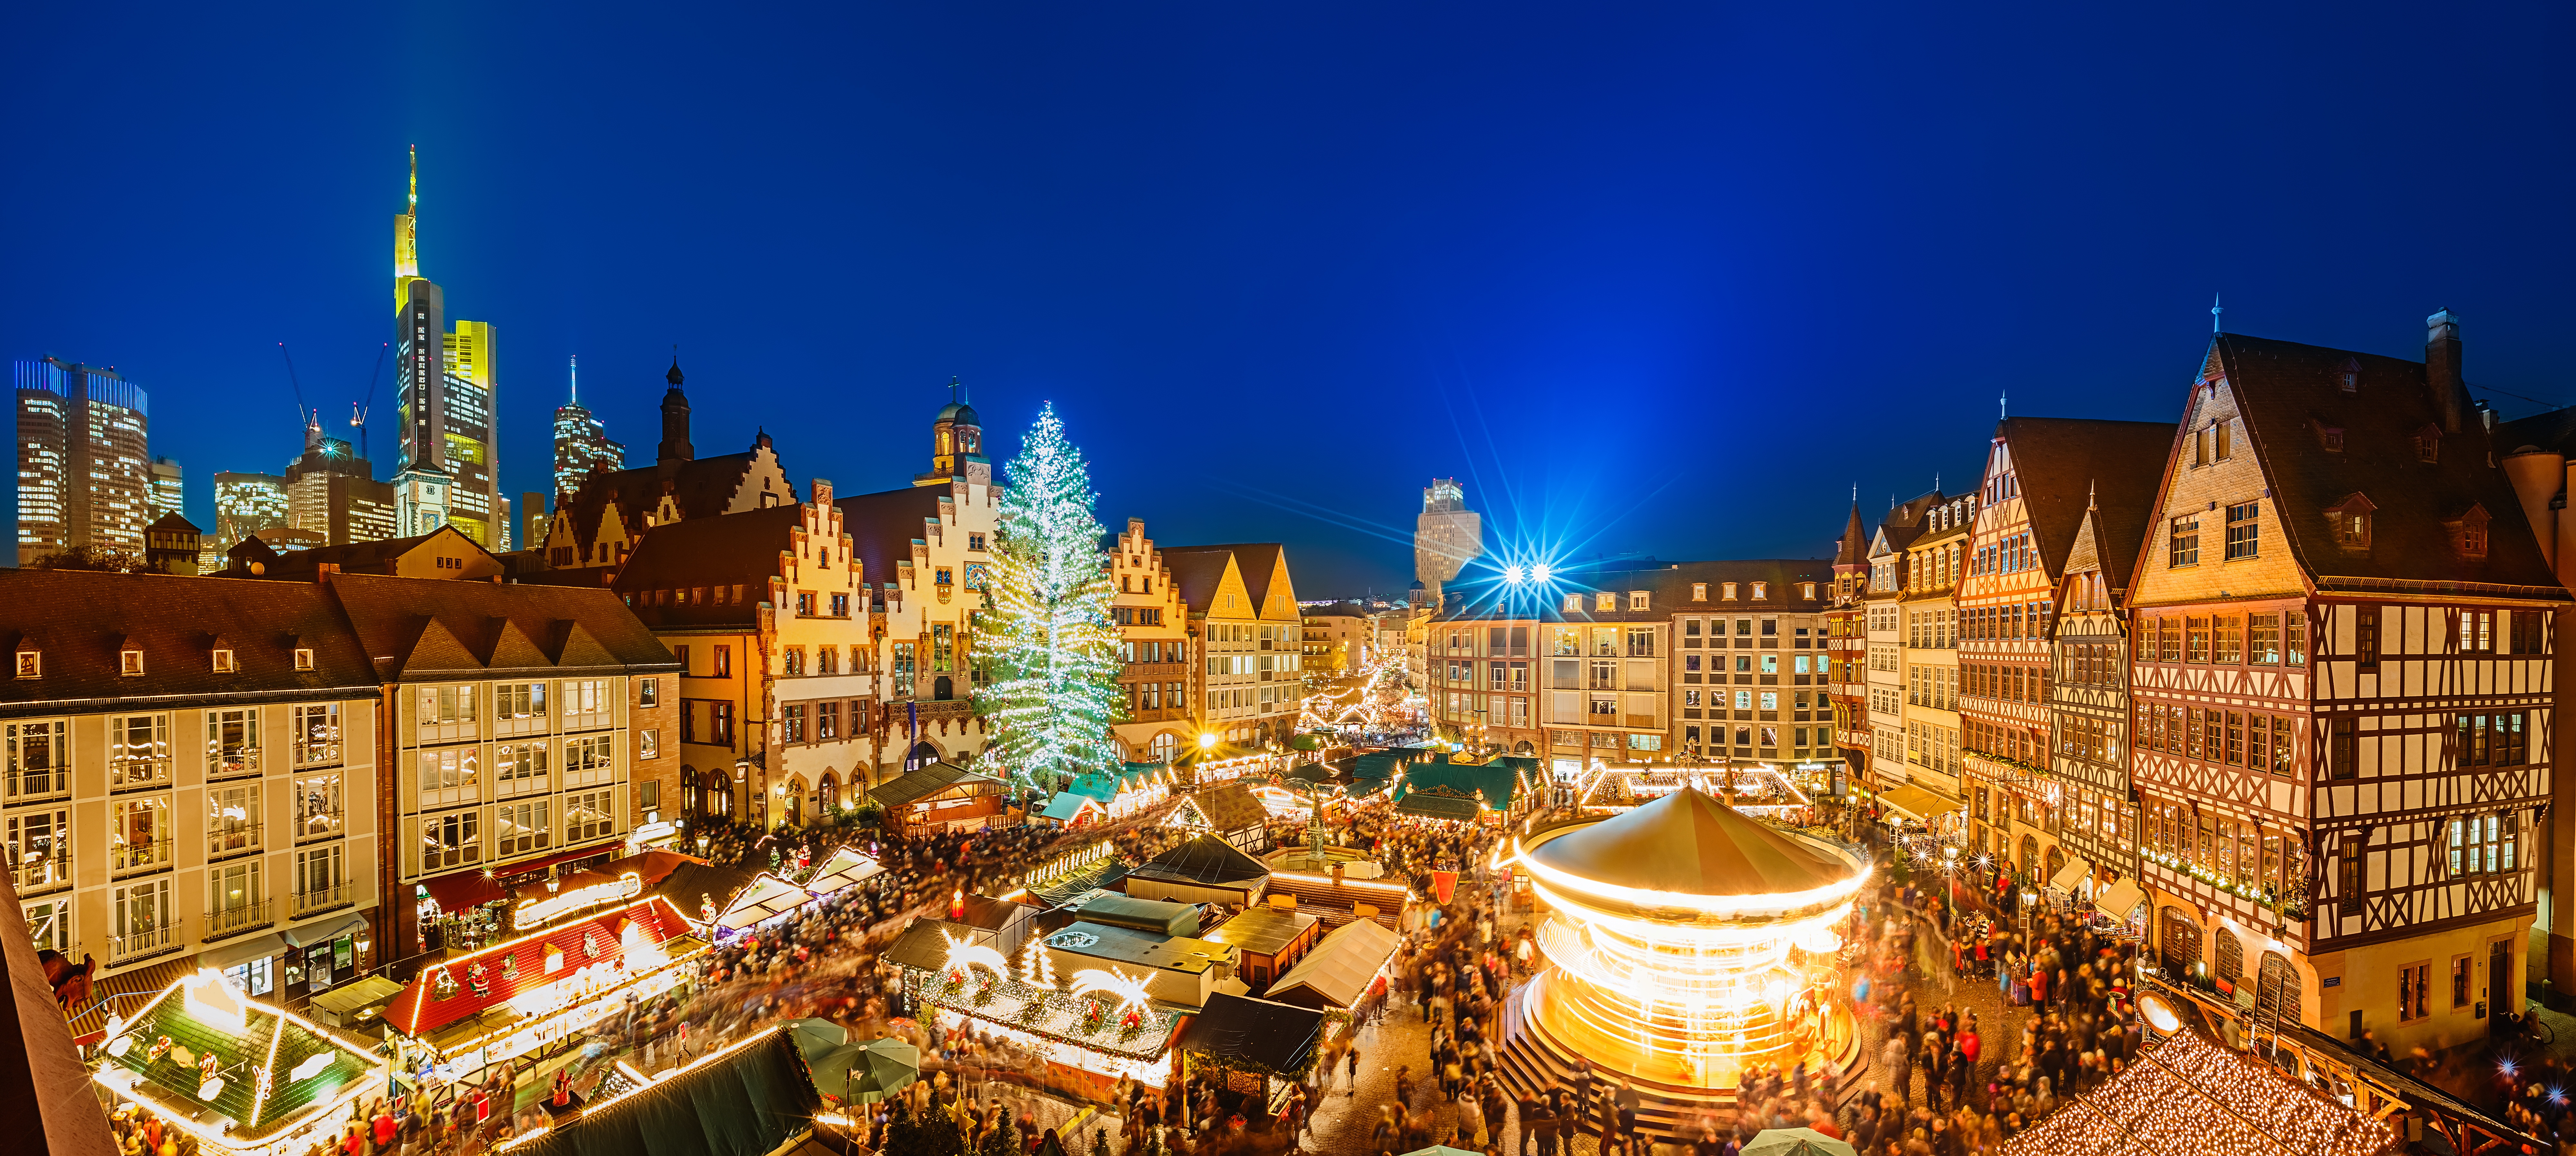  Frankfurt Christmas Market.jpeg